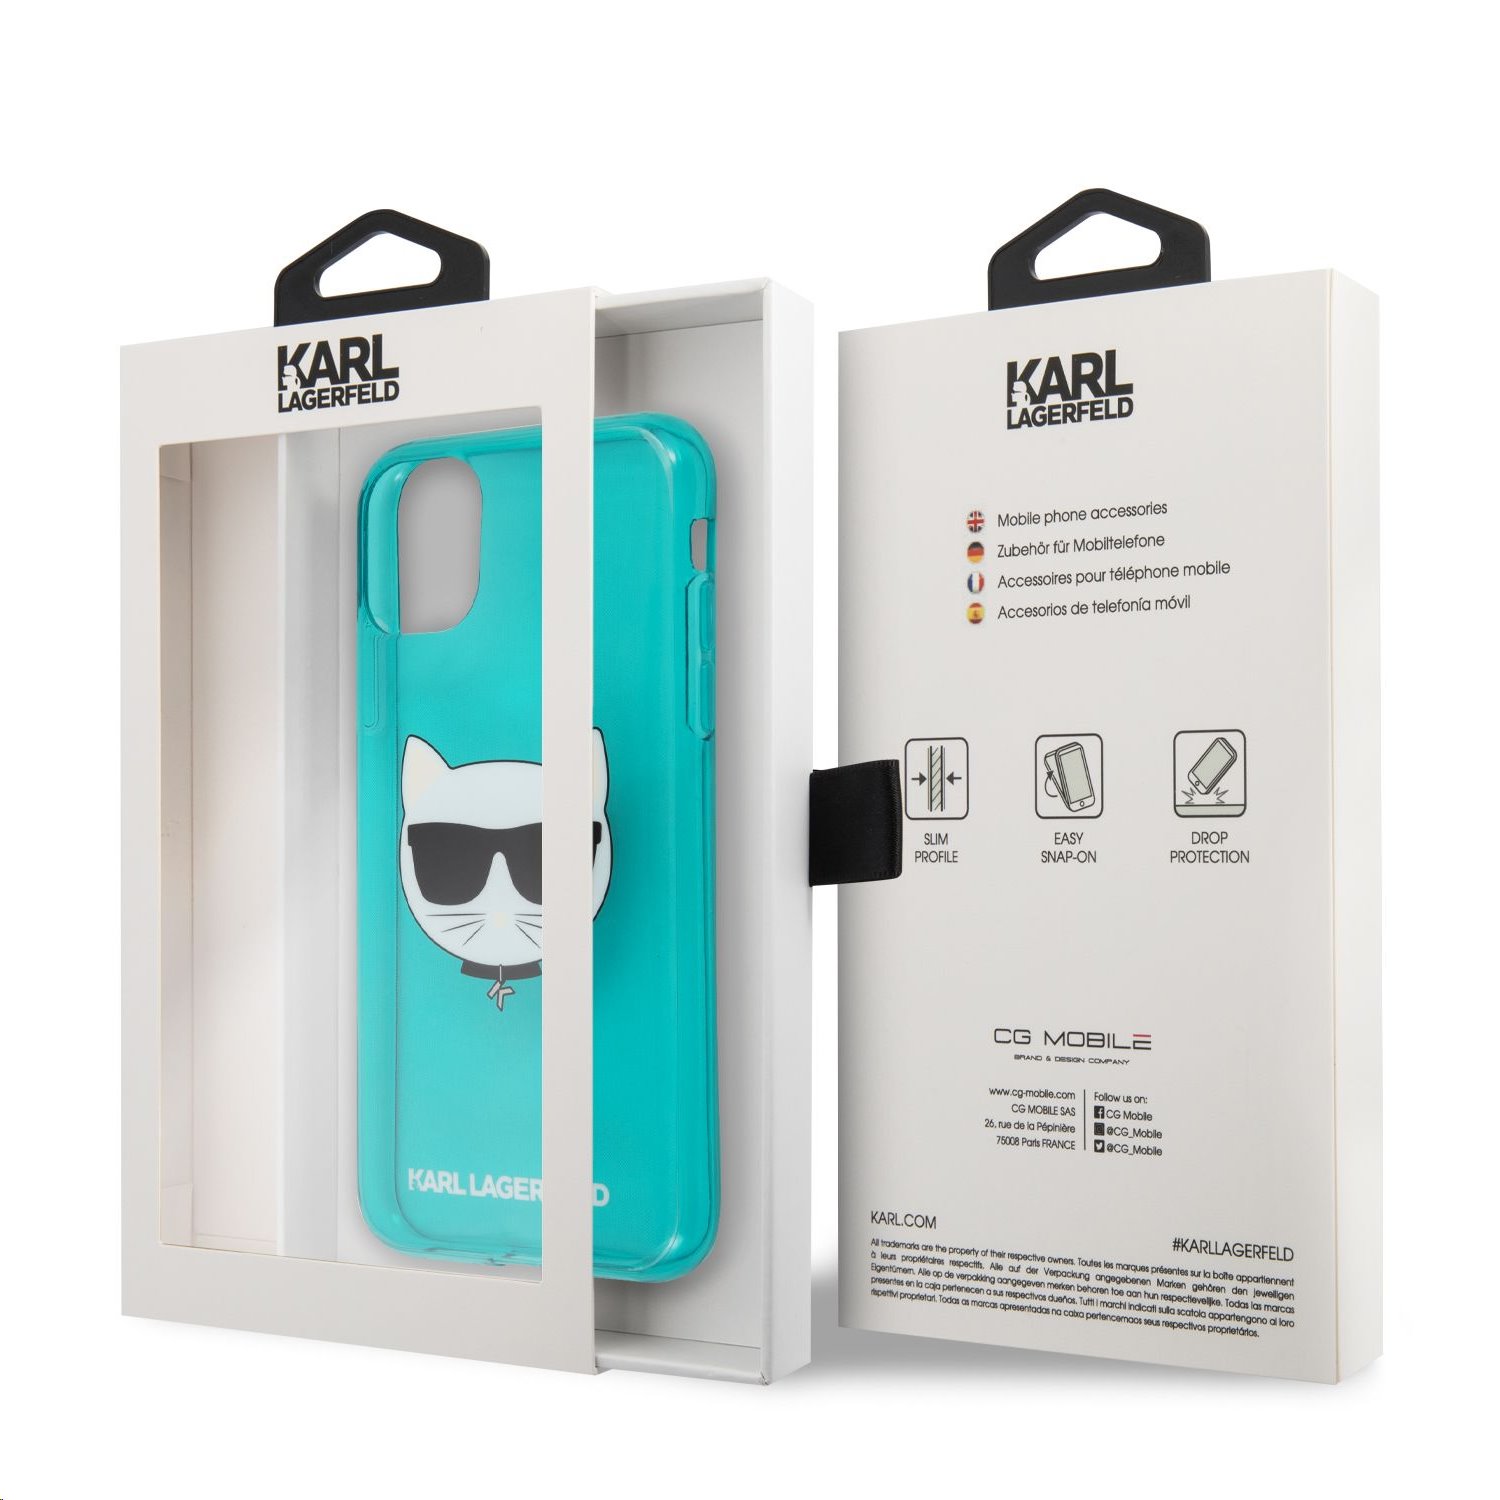 Silikonové pouzdro Karl Lagerfeld Choupette Head KLHCN61CHTRB pro Apple iPhone 11, modrá